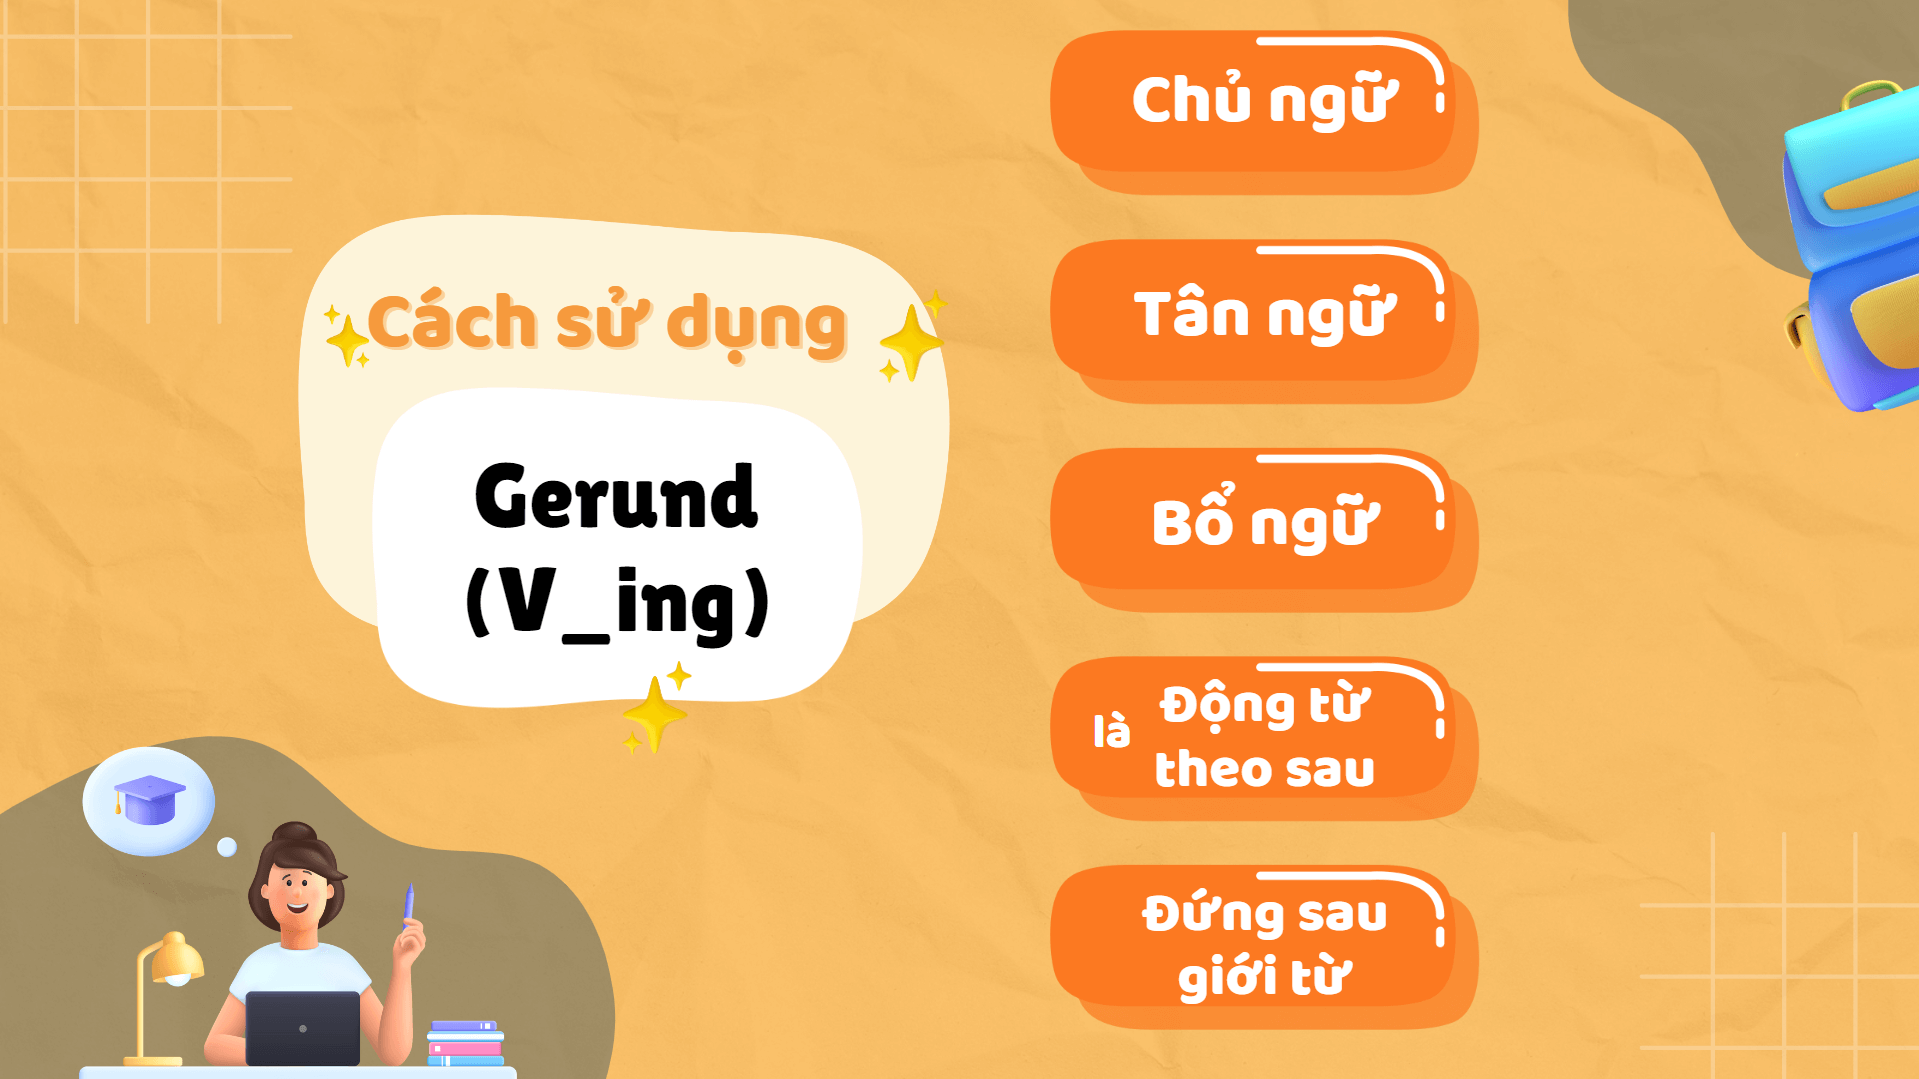 Cách sử dụng Gerund trong câu